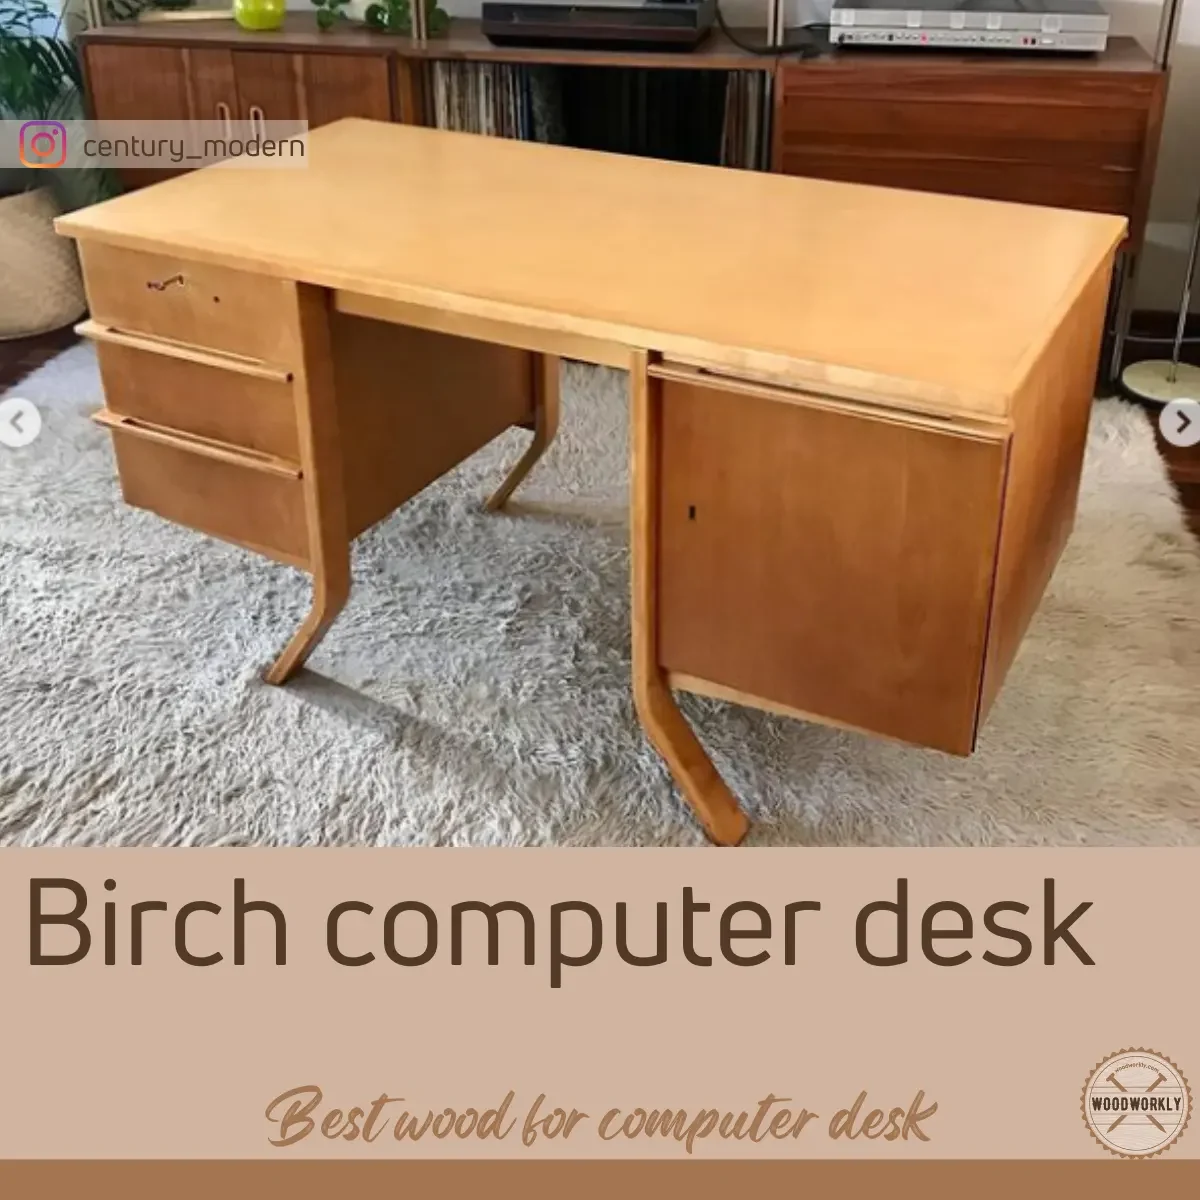 Birch computer desk